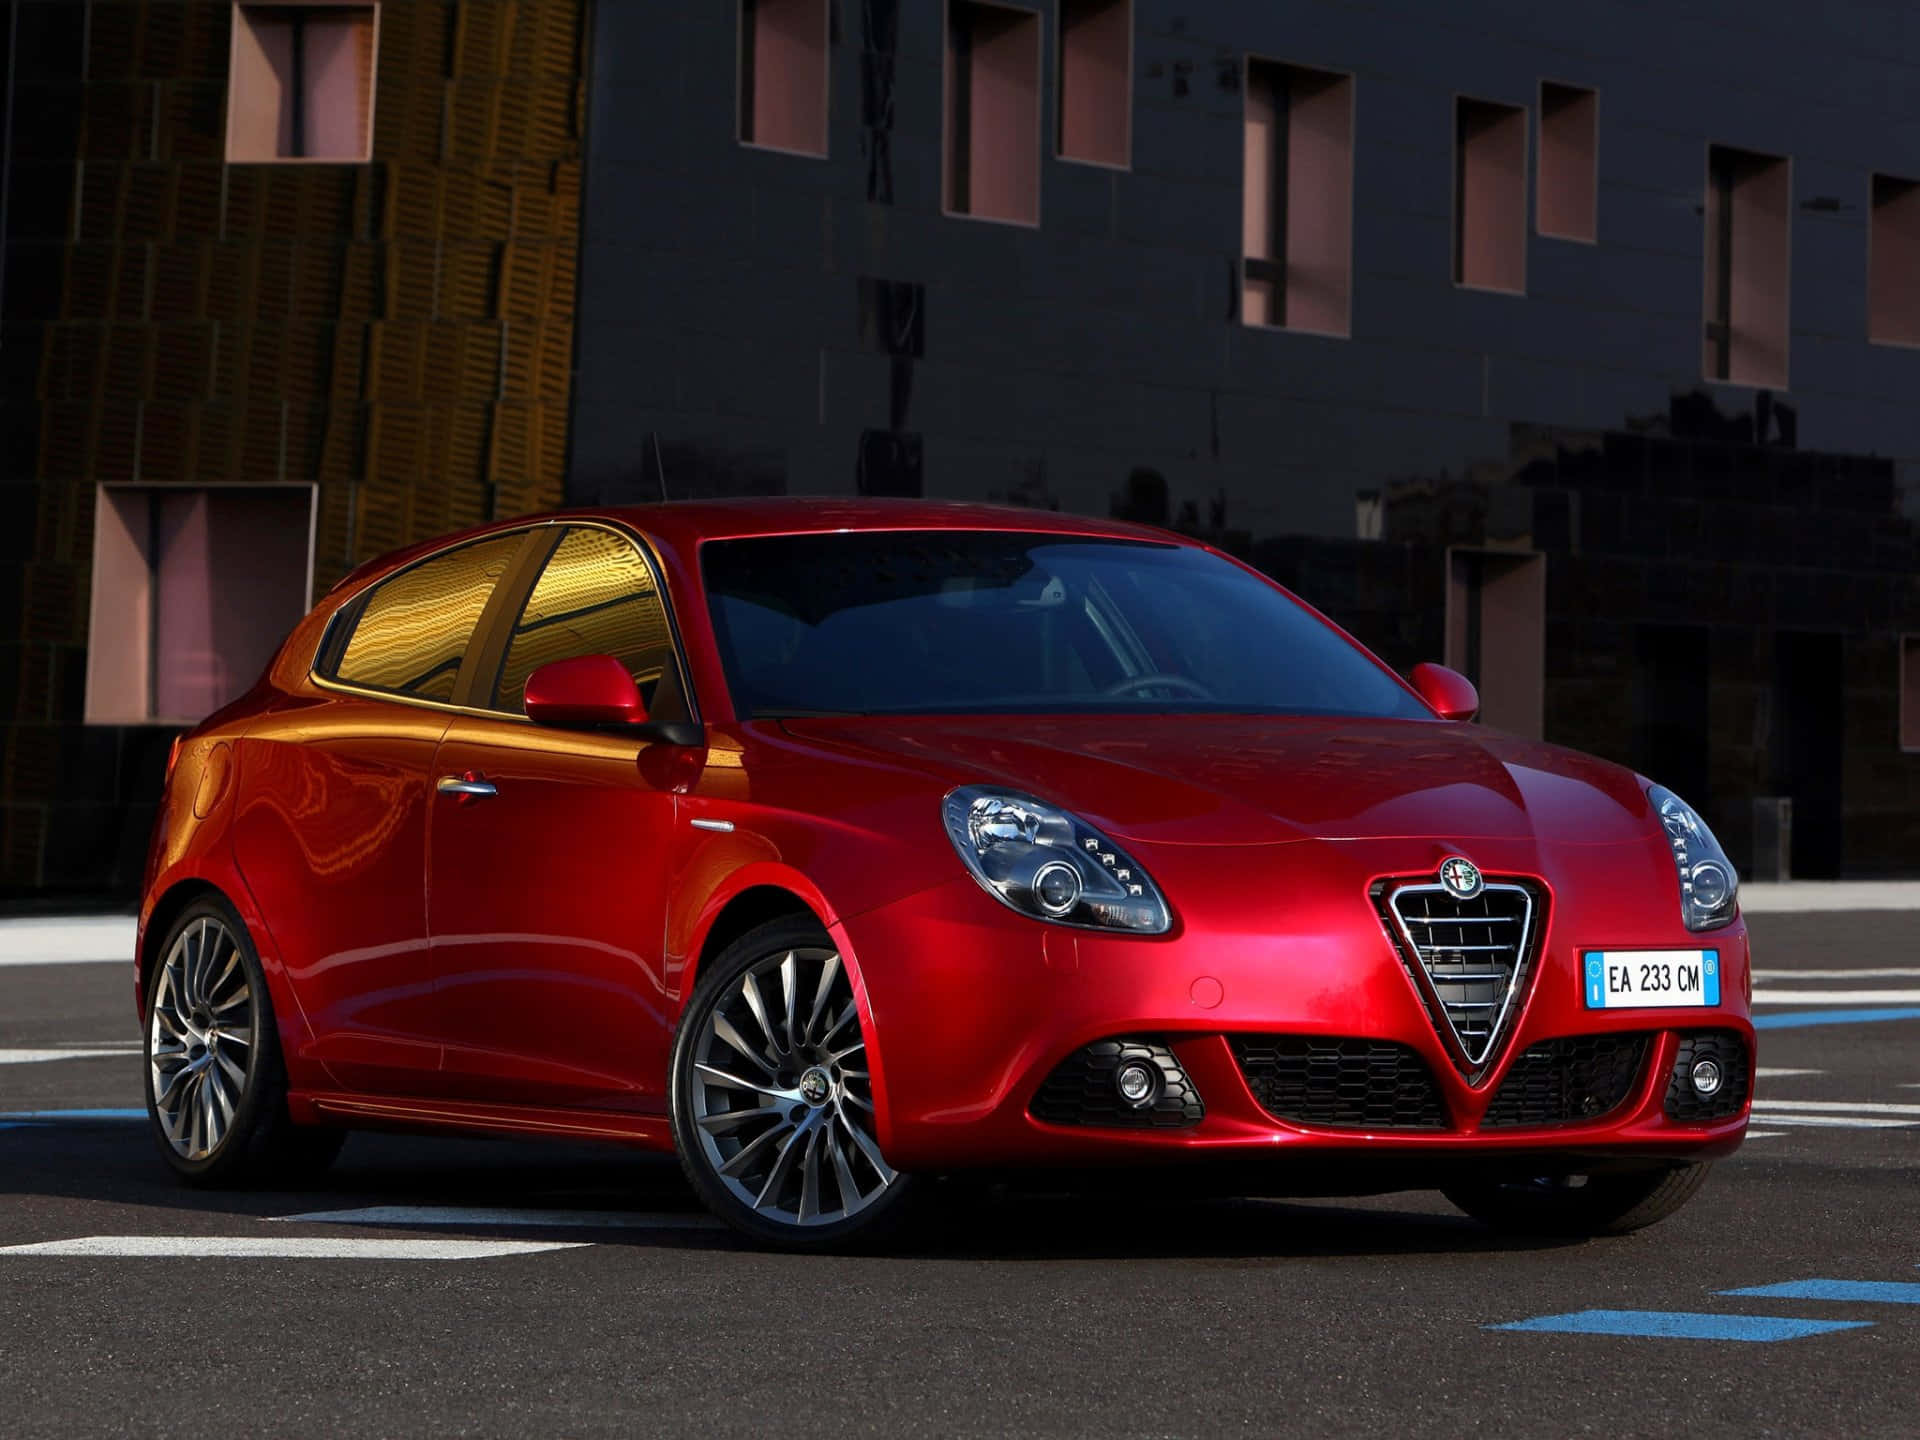 Caption: Sleek Alfa Romeo Giulietta in Stunning Scenery Wallpaper